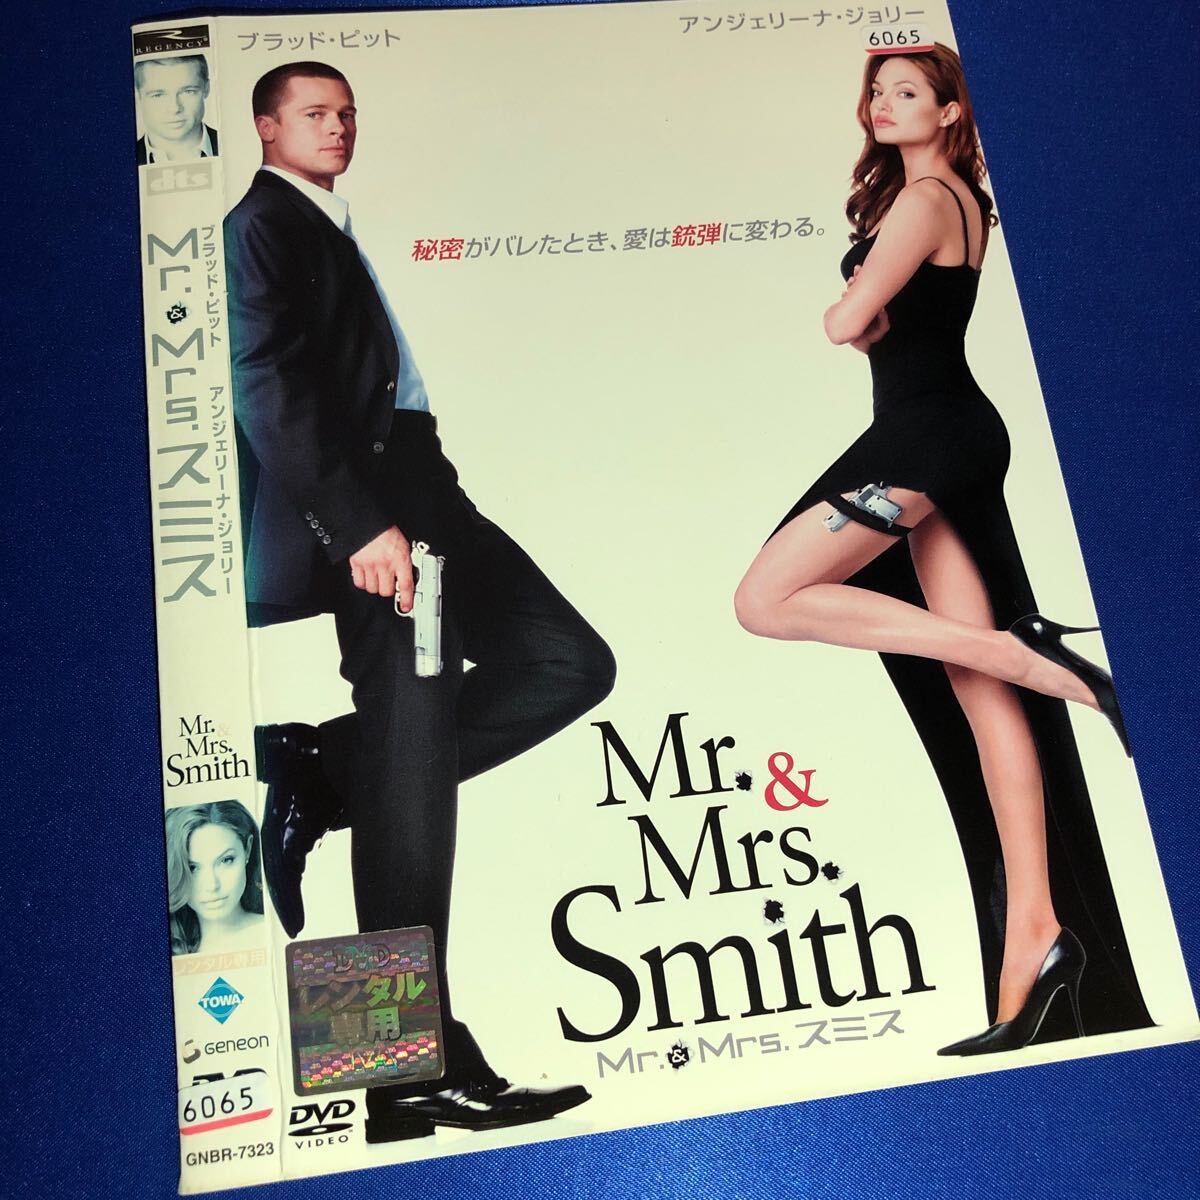 【即決価格・ディスクのクリーニング済み】Mr.&Mrs.スミス DVD 《棚番1016》_画像1